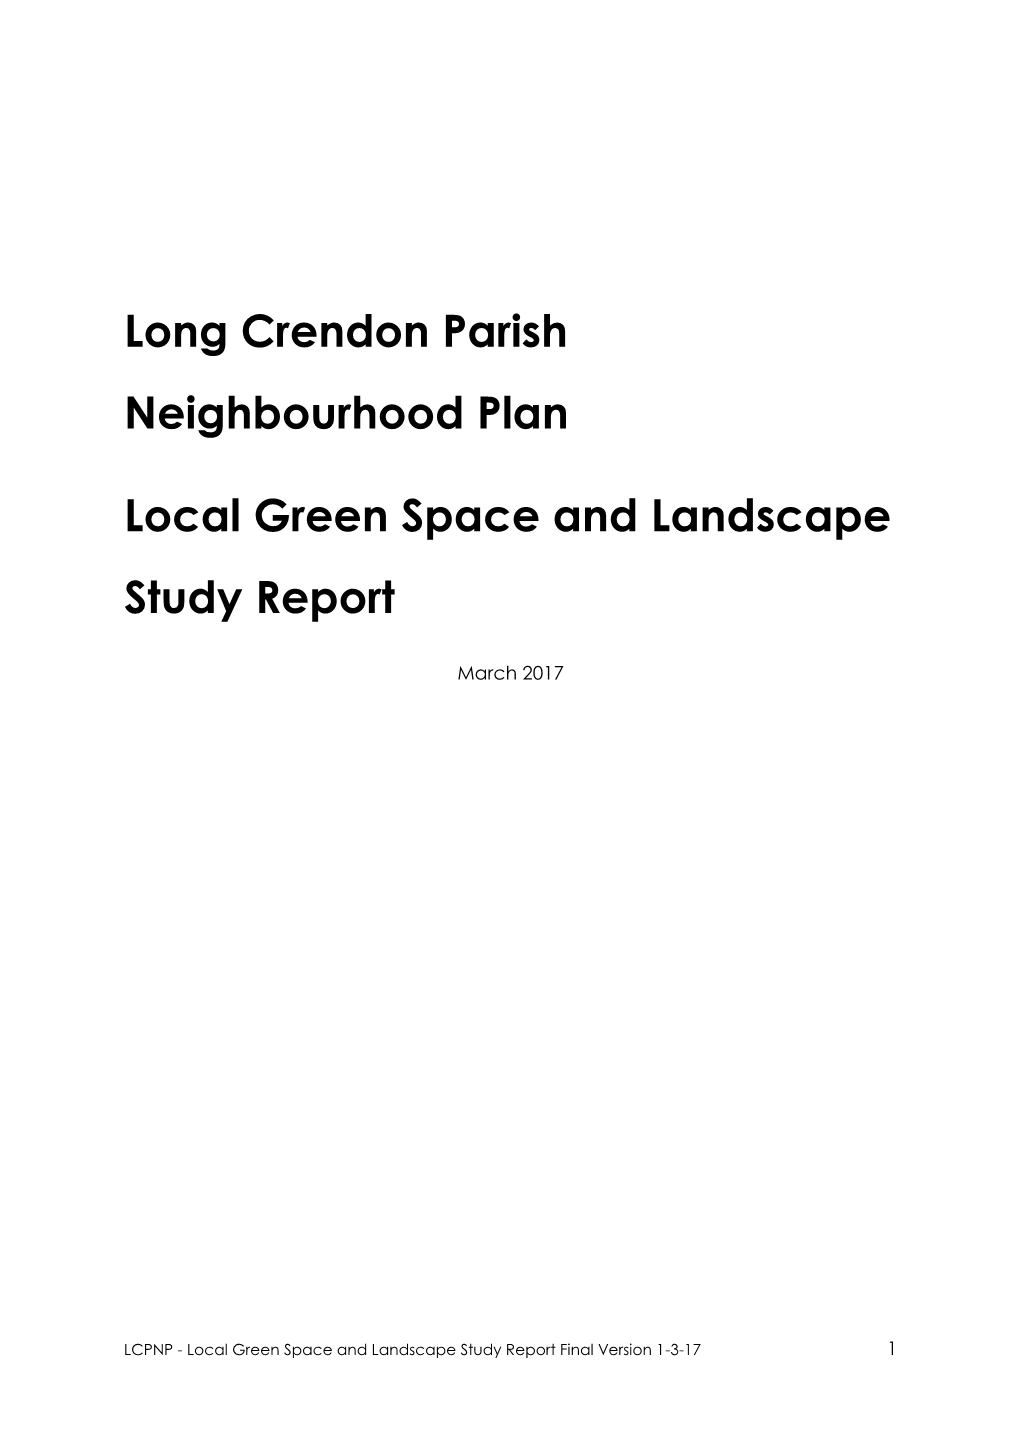 Long Crendon Neighbourhood Plan Local Green